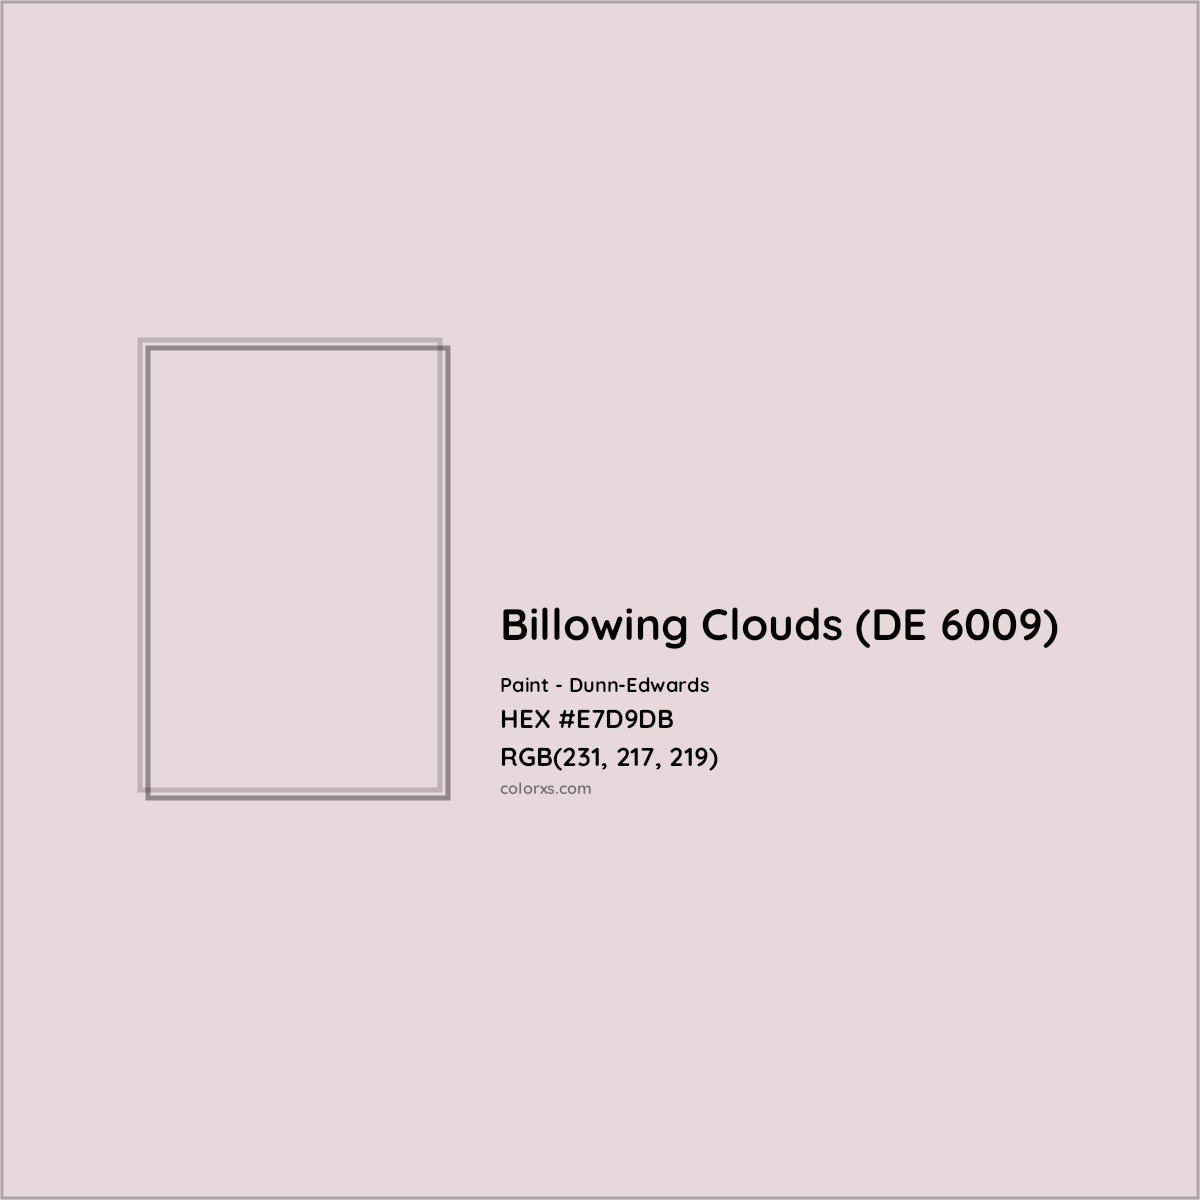 HEX #E7D9DB Billowing Clouds (DE 6009) Paint Dunn-Edwards - Color Code